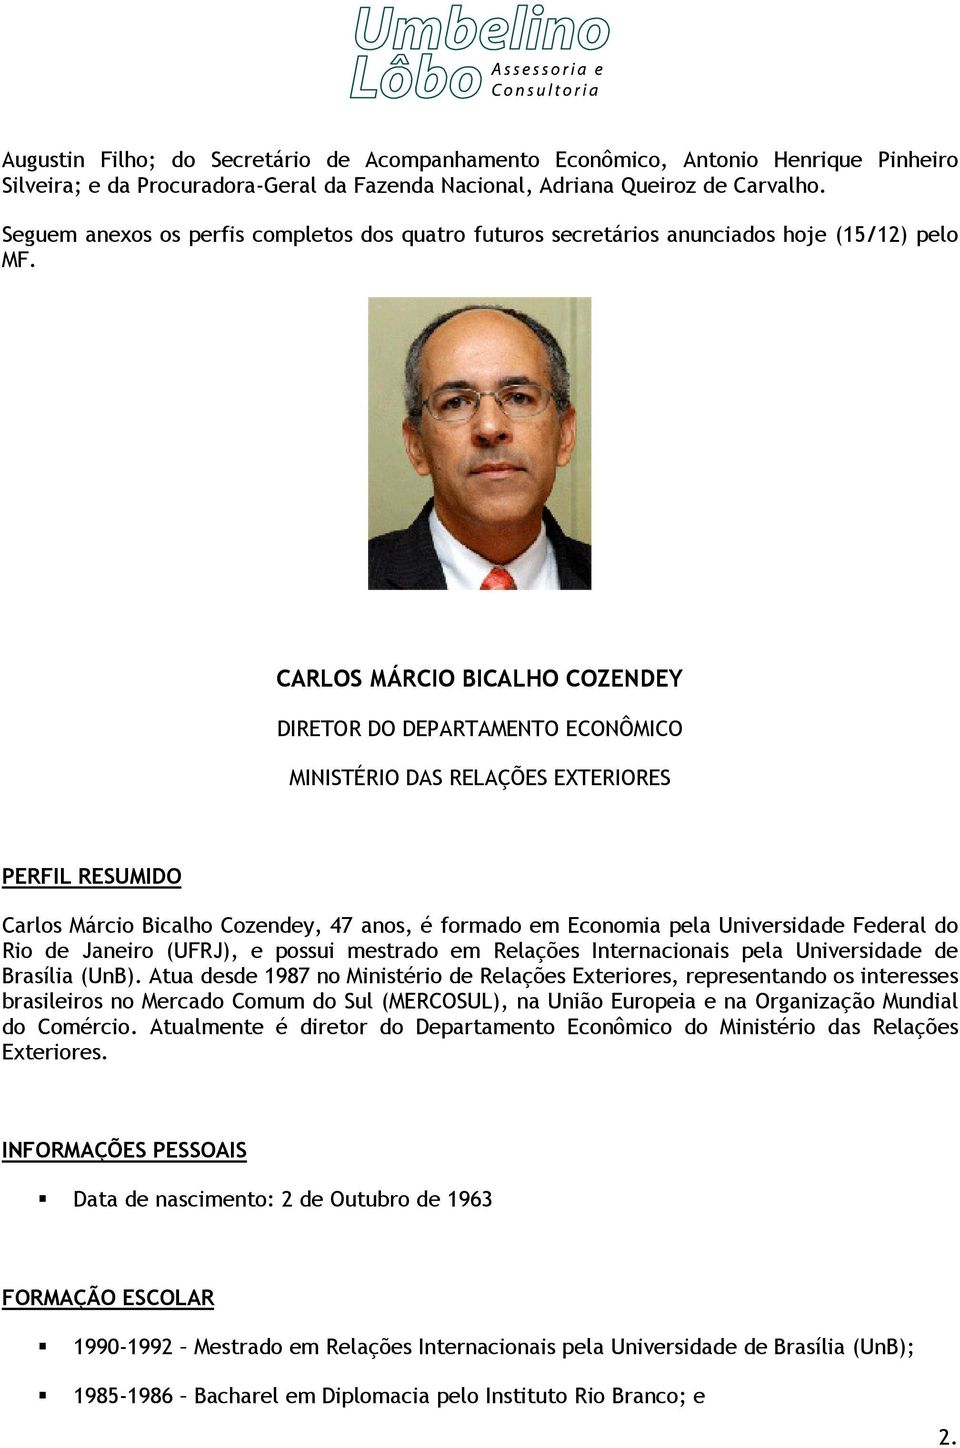 CARLOS MÁRCIO BICALHO COZENDEY DIRETOR DO DEPARTAMENTO ECONÔMICO MINISTÉRIO DAS RELAÇÕES EXTERIORES PERFIL RESUMIDO Carlos Márcio Bicalho Cozendey, 47 anos, é formado em Economia pela Universidade